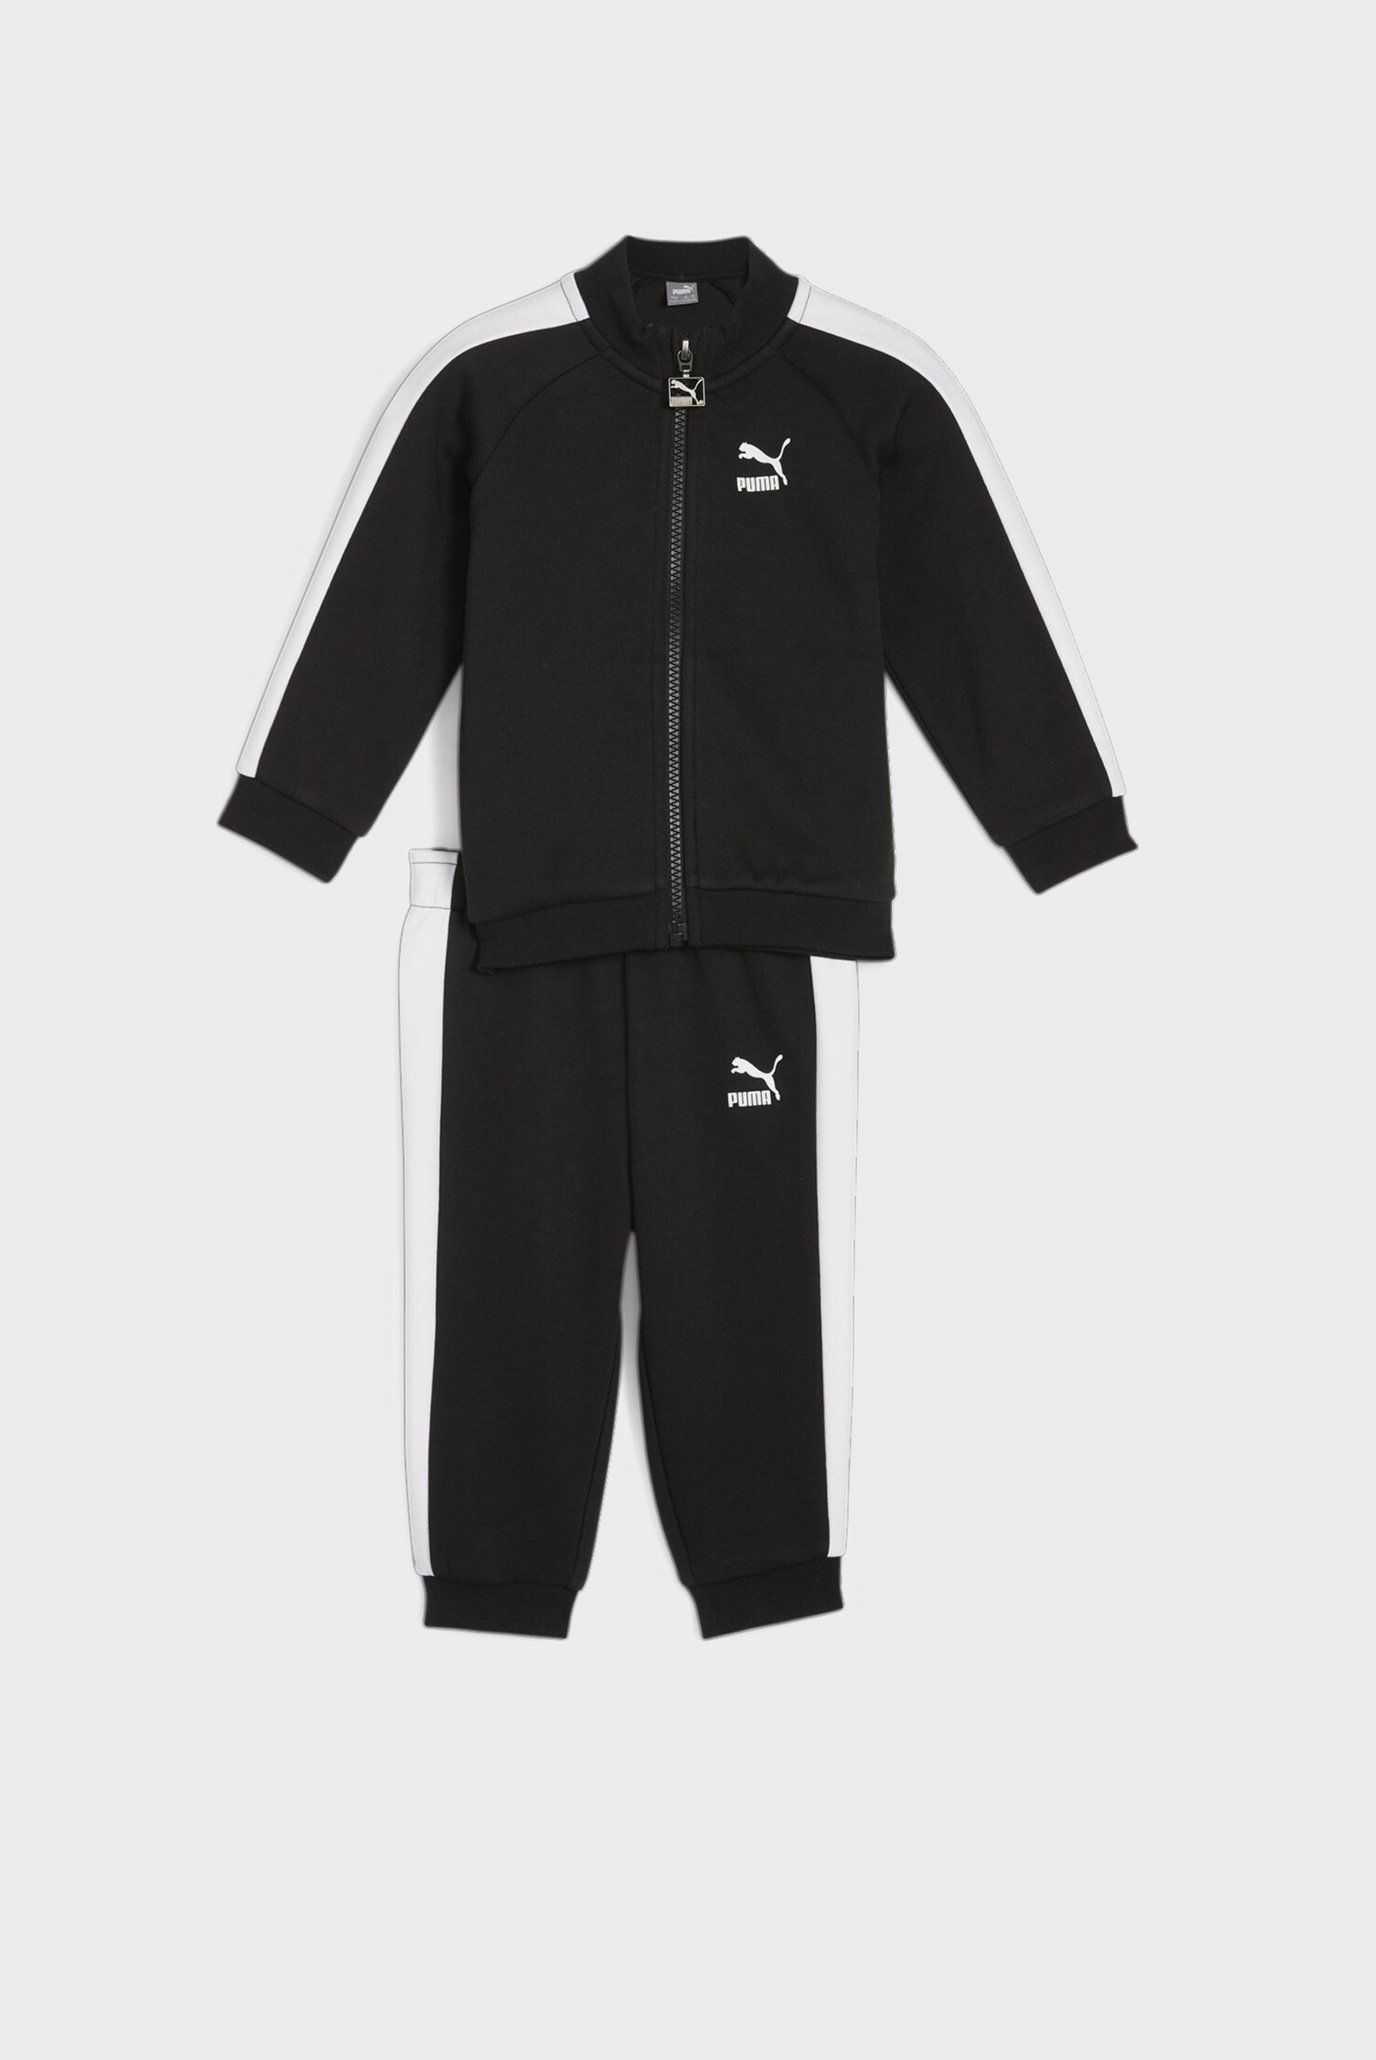 Детский черный спортивный костюм (кофта, брюки)  MINICATS T7 ICONIC Baby Tracksuit Set 1